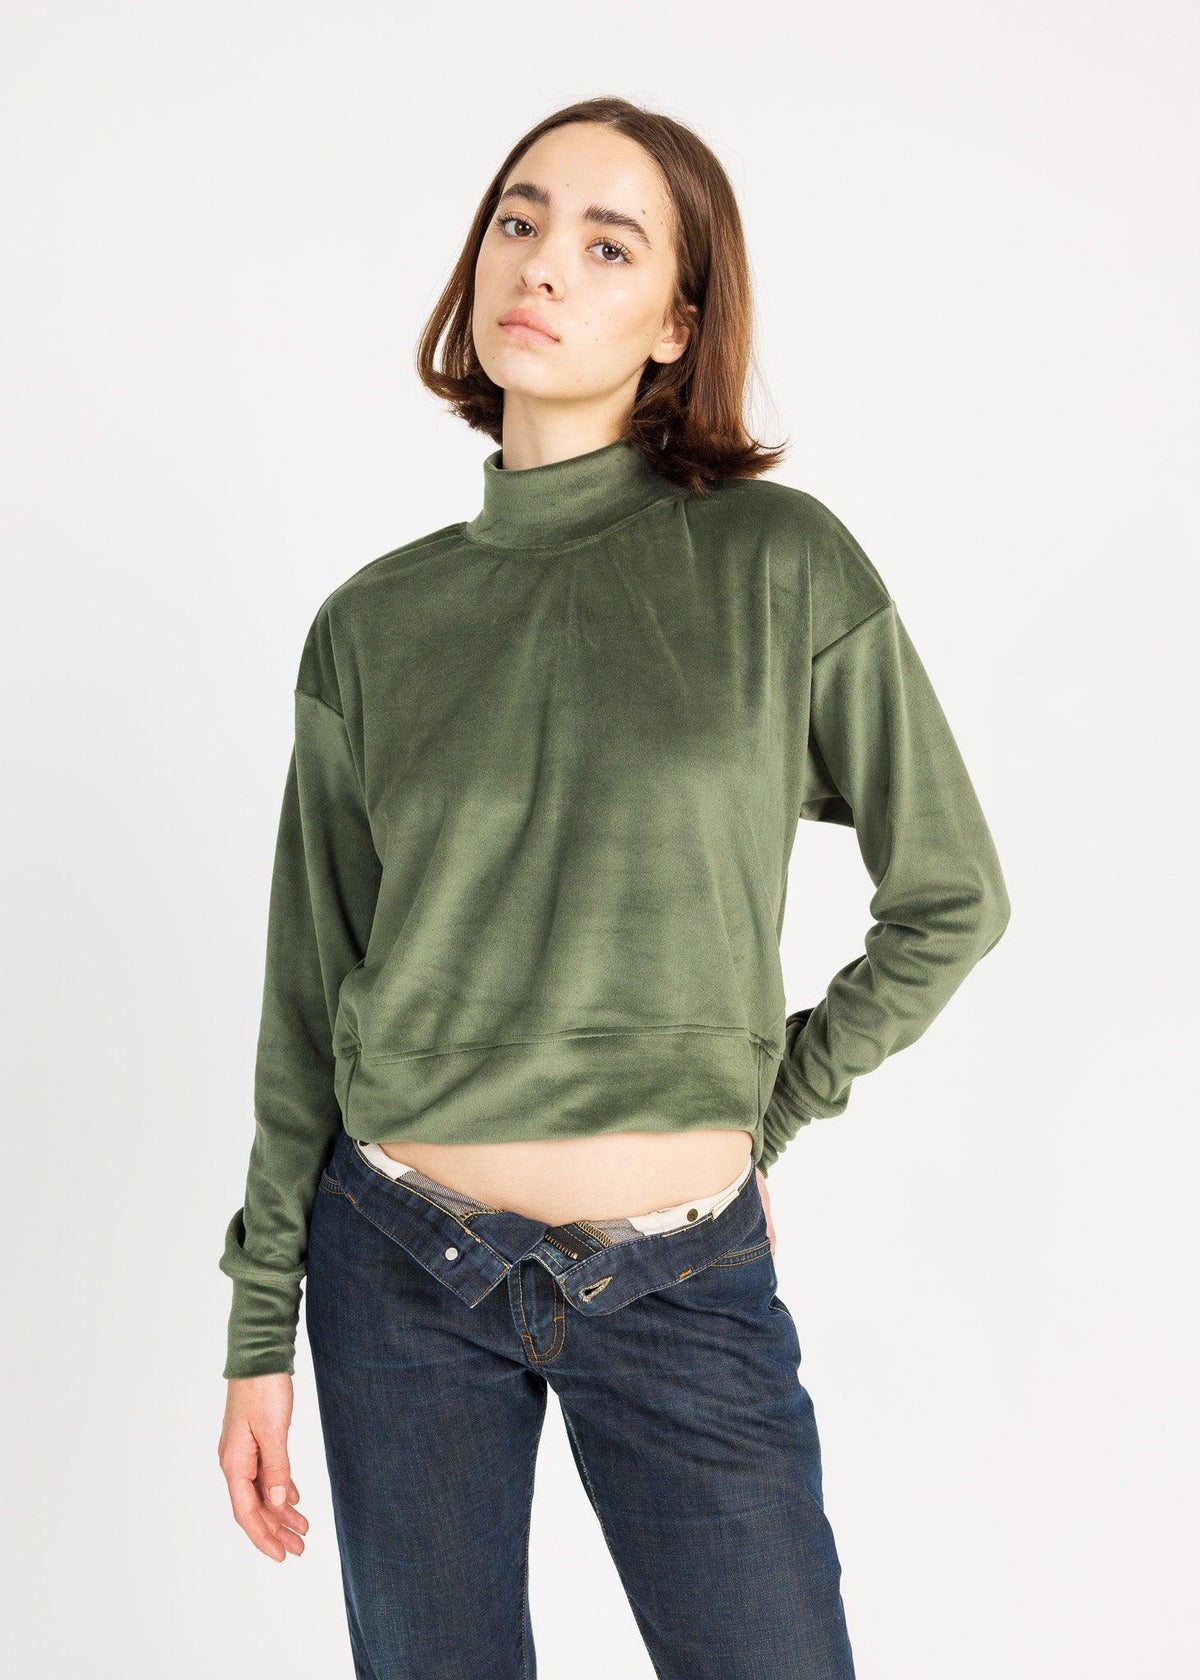 AVERY sweater velvet - Yana K